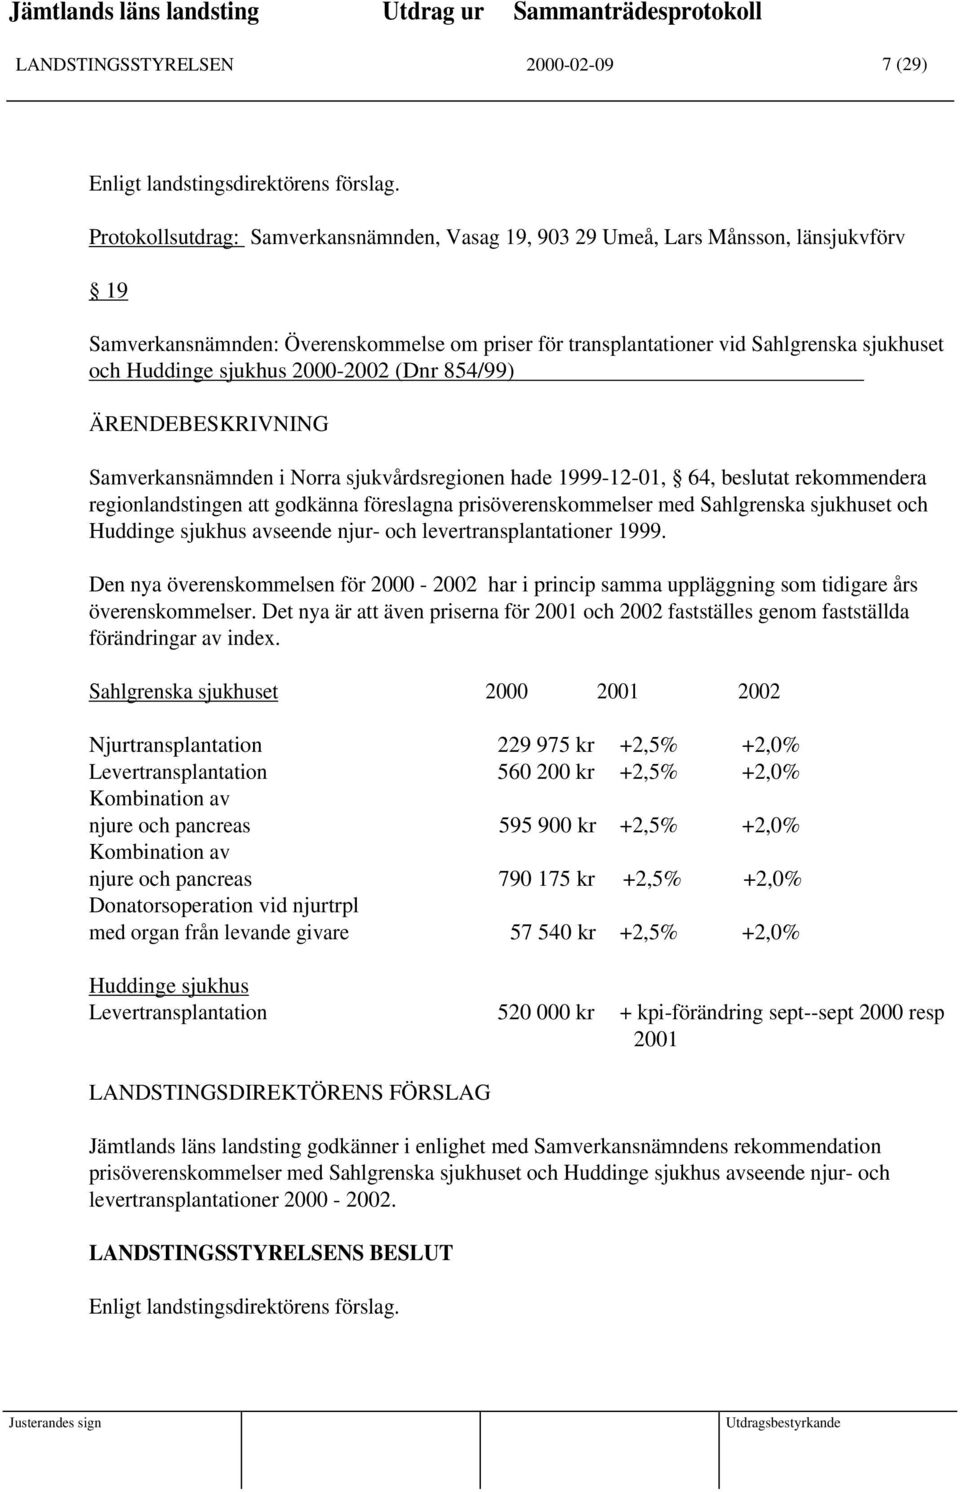 sjukhus 2000-2002 (Dnr 854/99) ÄRENDEBESKRIVNING Samverkansnämnden i Norra sjukvårdsregionen hade 1999-12-01, 64, beslutat rekommendera regionlandstingen att godkänna föreslagna prisöverenskommelser